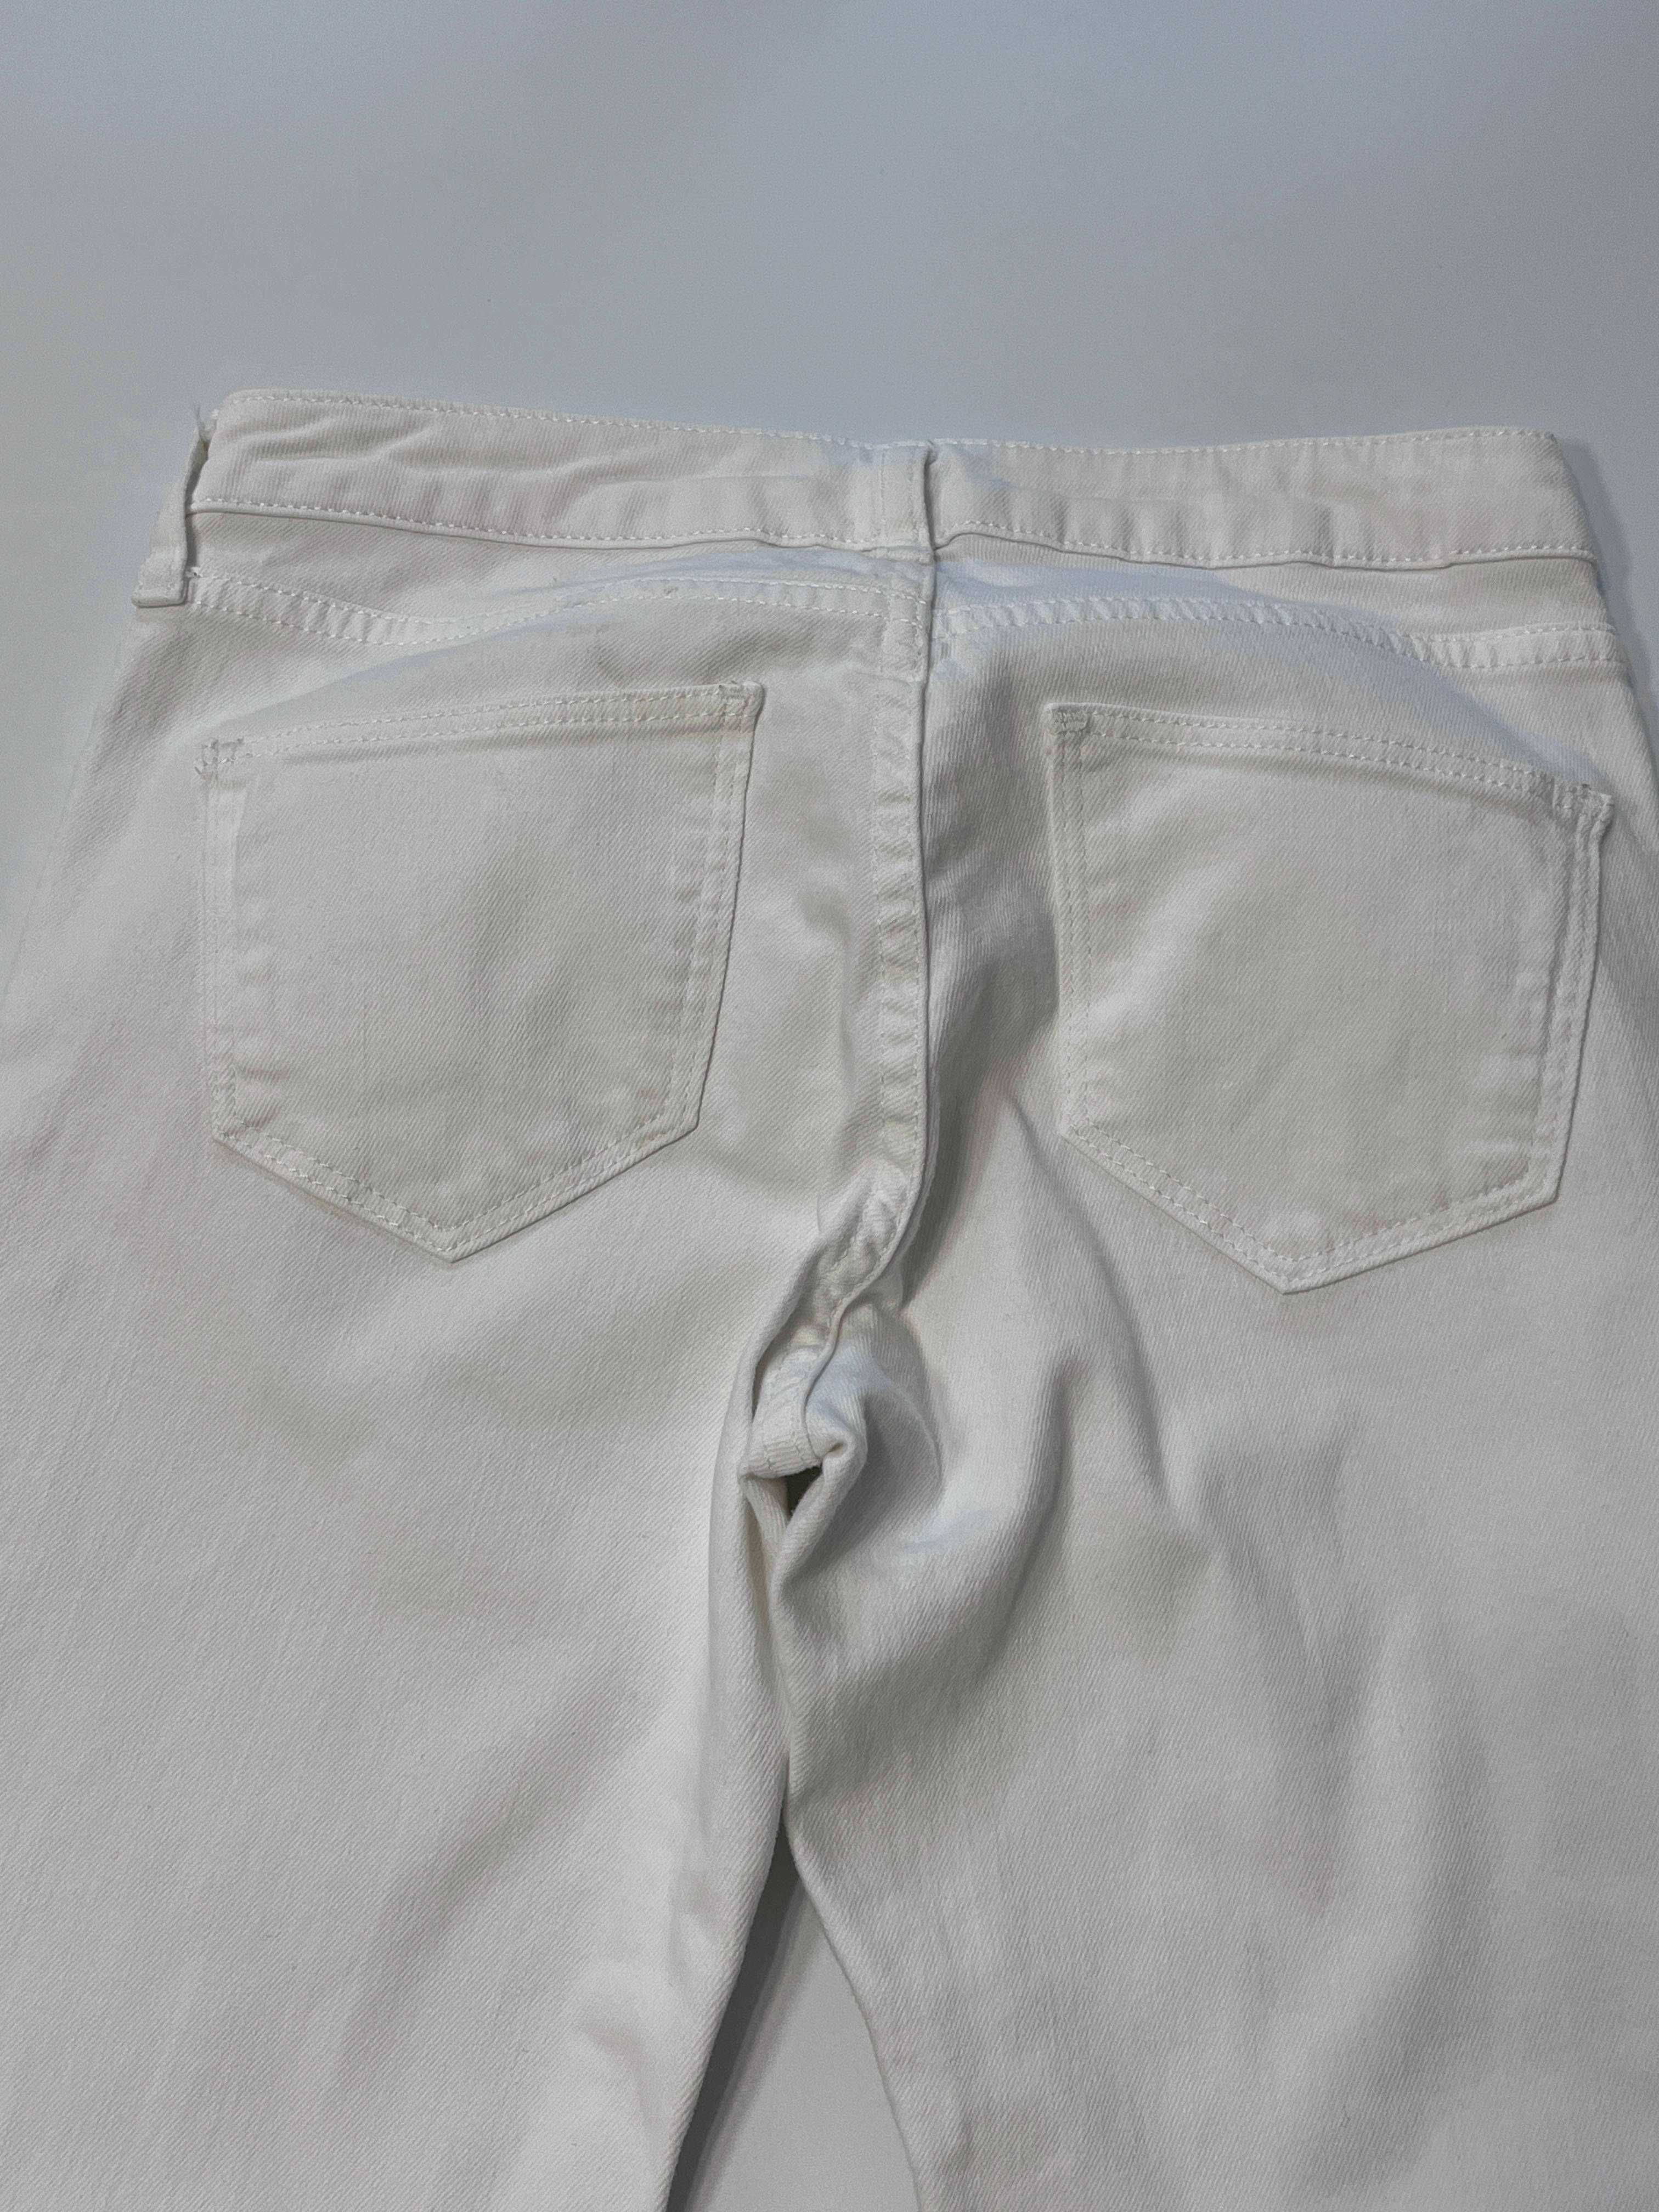 spodnie białe jeans damskie xs